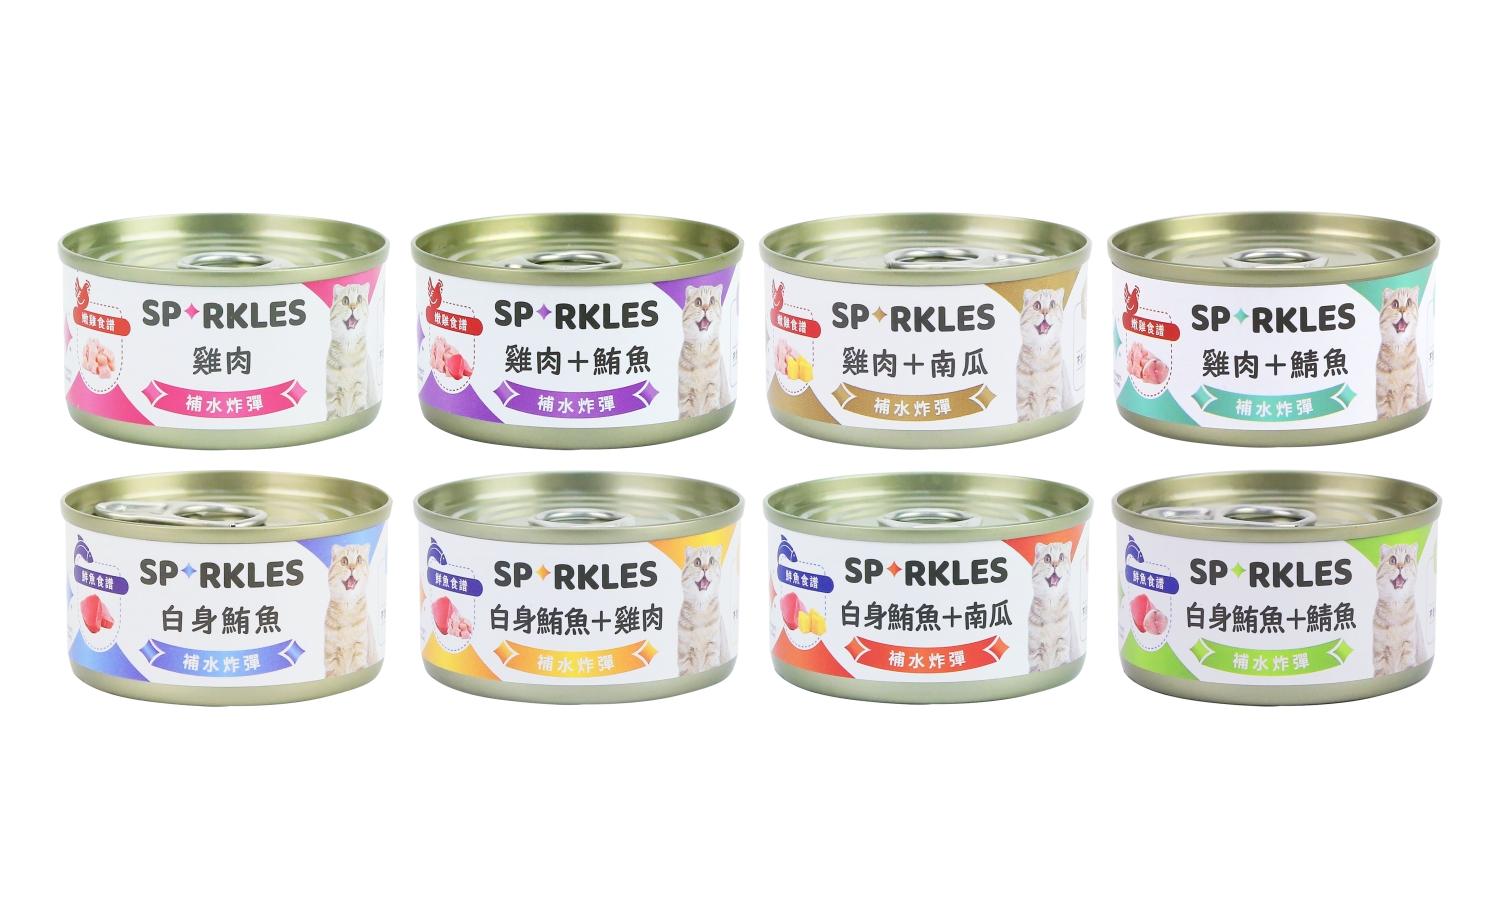 【超級SP Sparkles 補水炸彈湯罐 70g】雞肉 鮪魚 無穀 無膠 湯罐 泰國 副食罐 貓罐 貓 罐